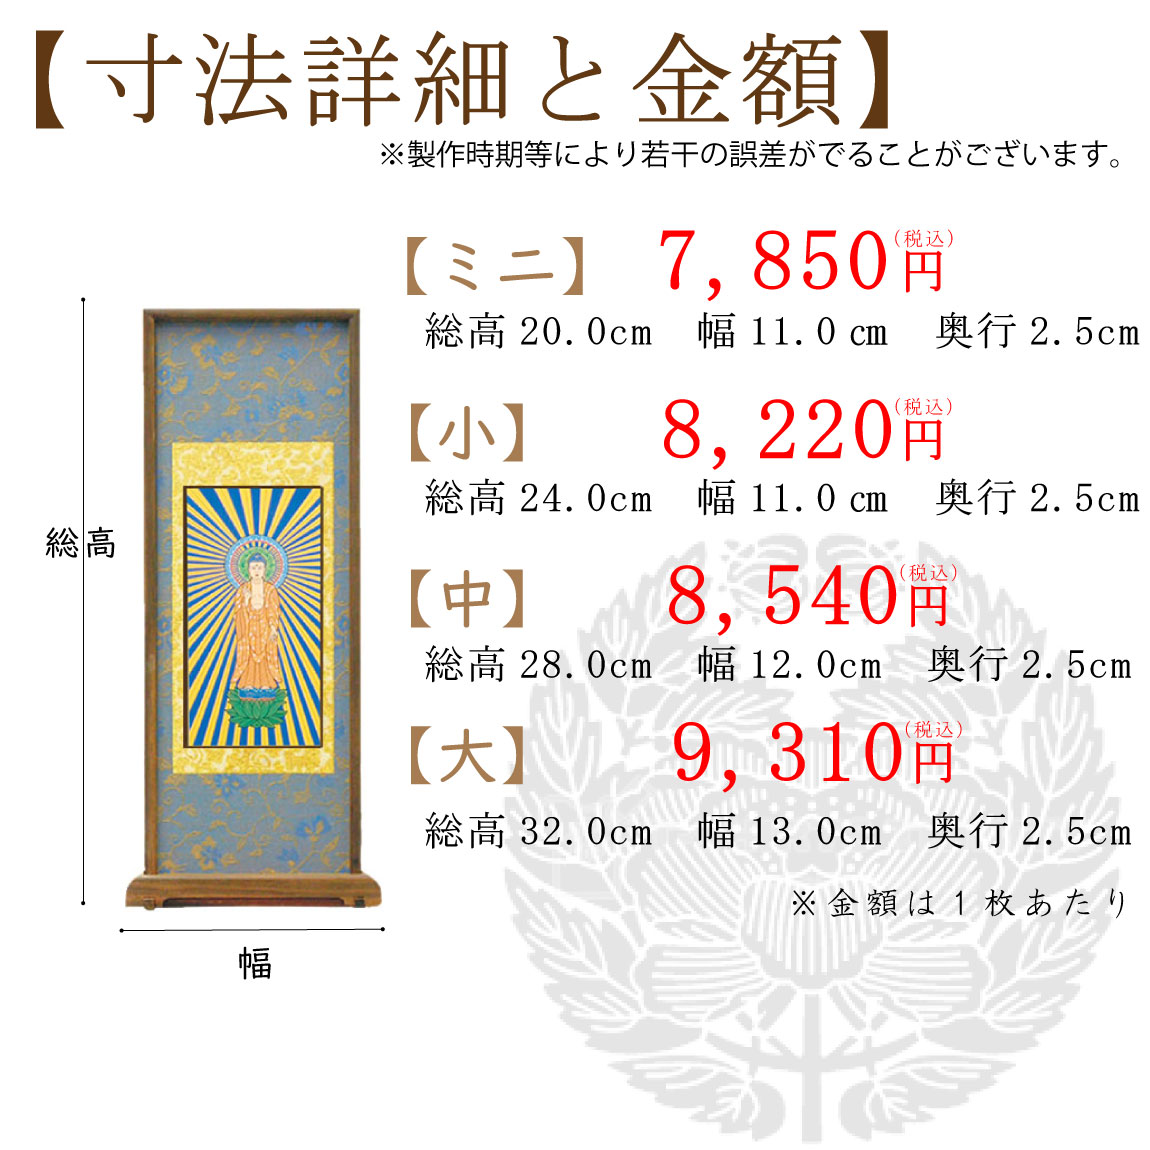 【高級素材】浄土真宗大谷派のスタンド式掛け軸のサイズと価格